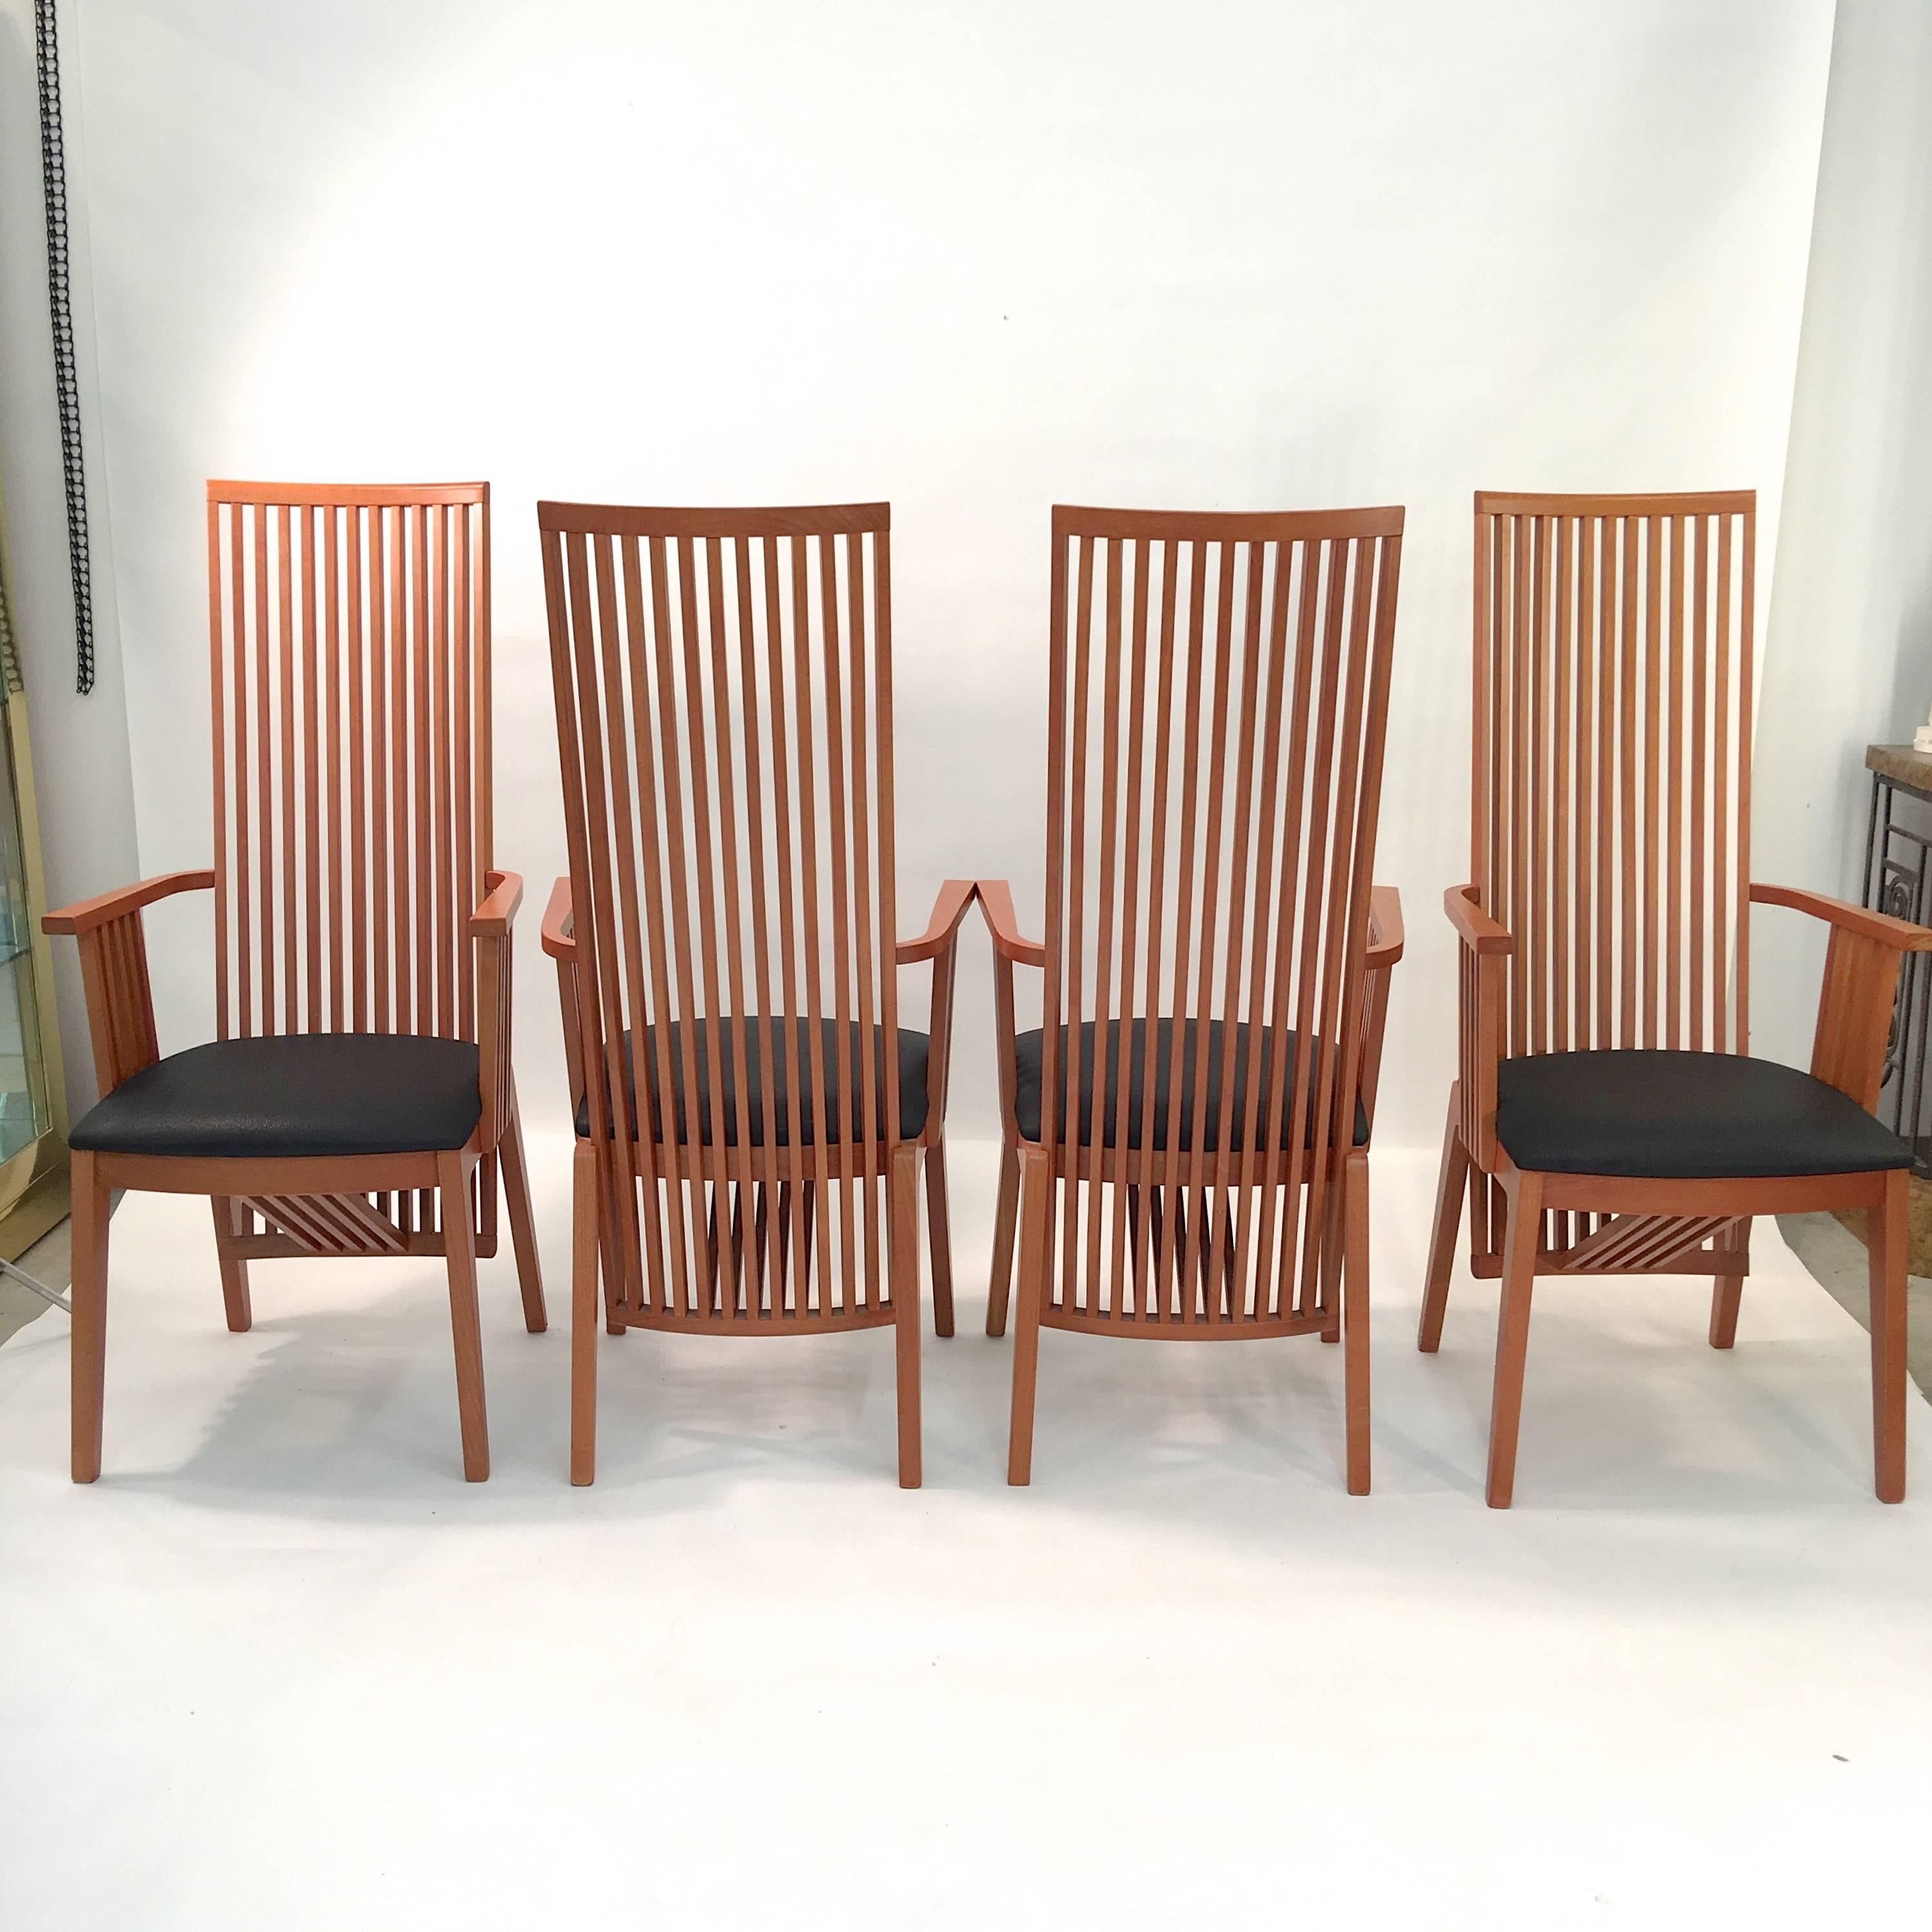 Satz von vier Esstischsesseln im Stil von Frank Lloyd Wright von A. Sibau, hergestellt in Manzano, Italien

Hergestellt aus Buchenholz mit Kirsche Finish mit schwarzem Leder Sitze.

Tadelloser Zustand.
